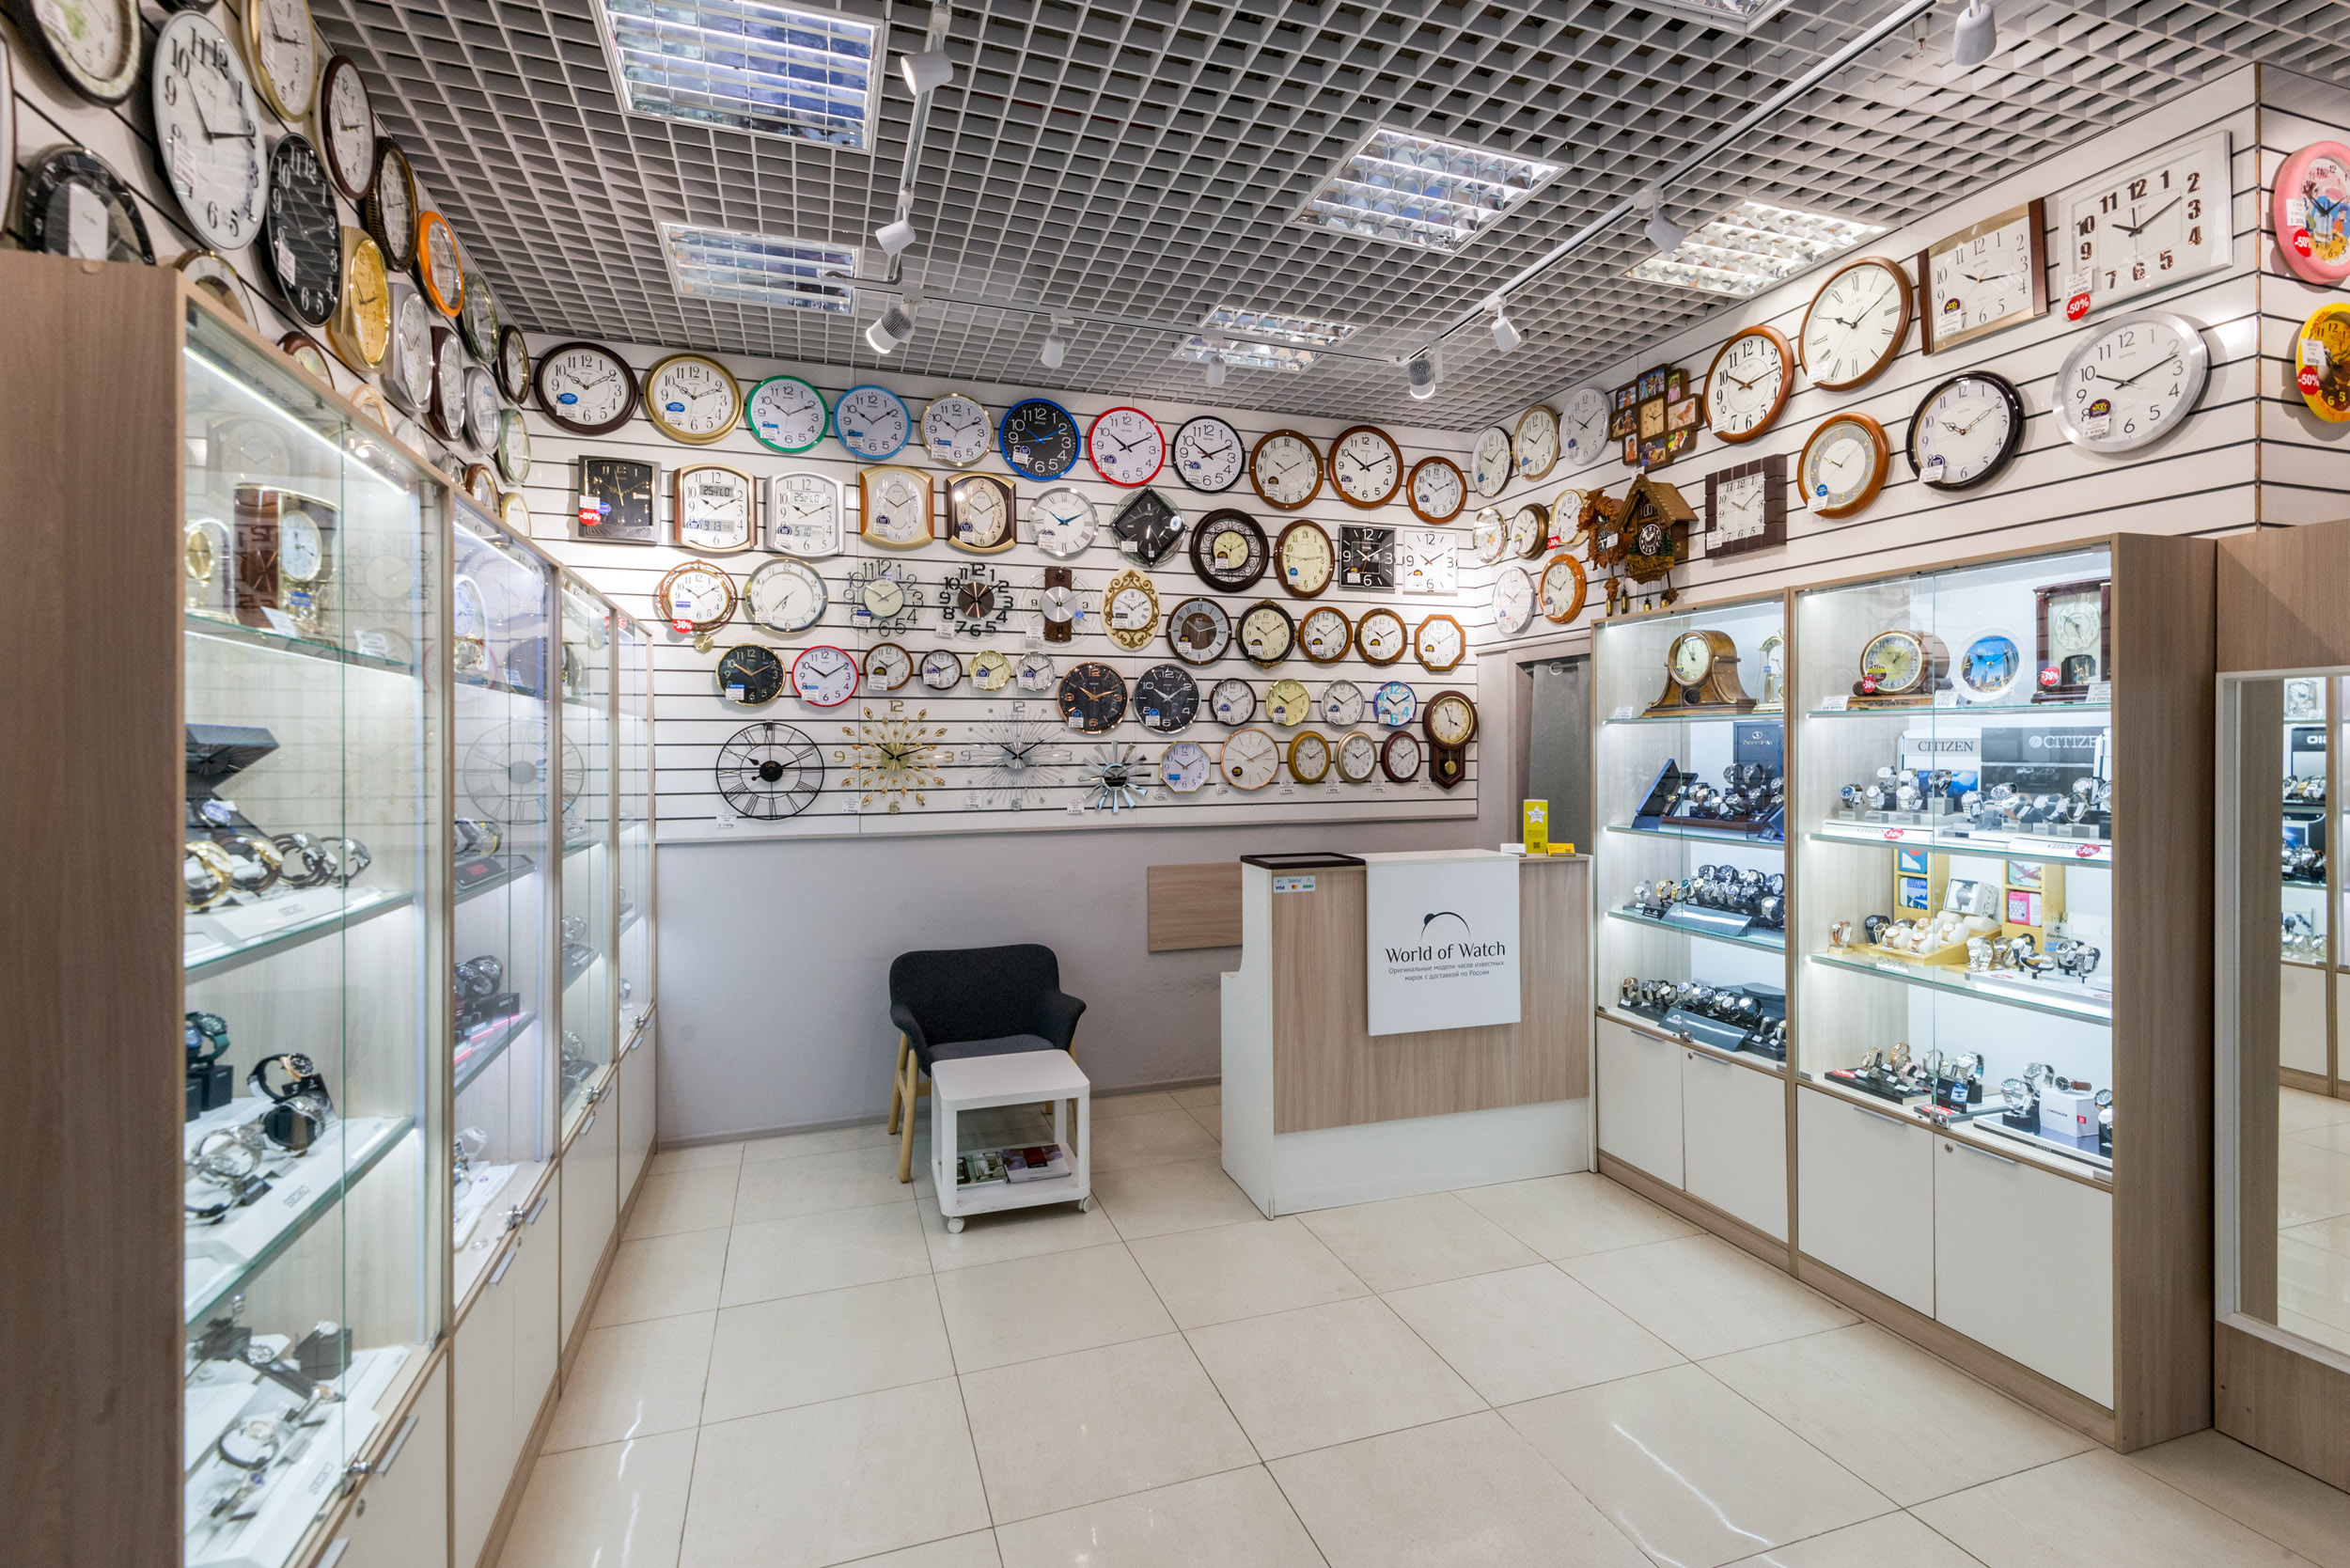 магазины часов в москве и их